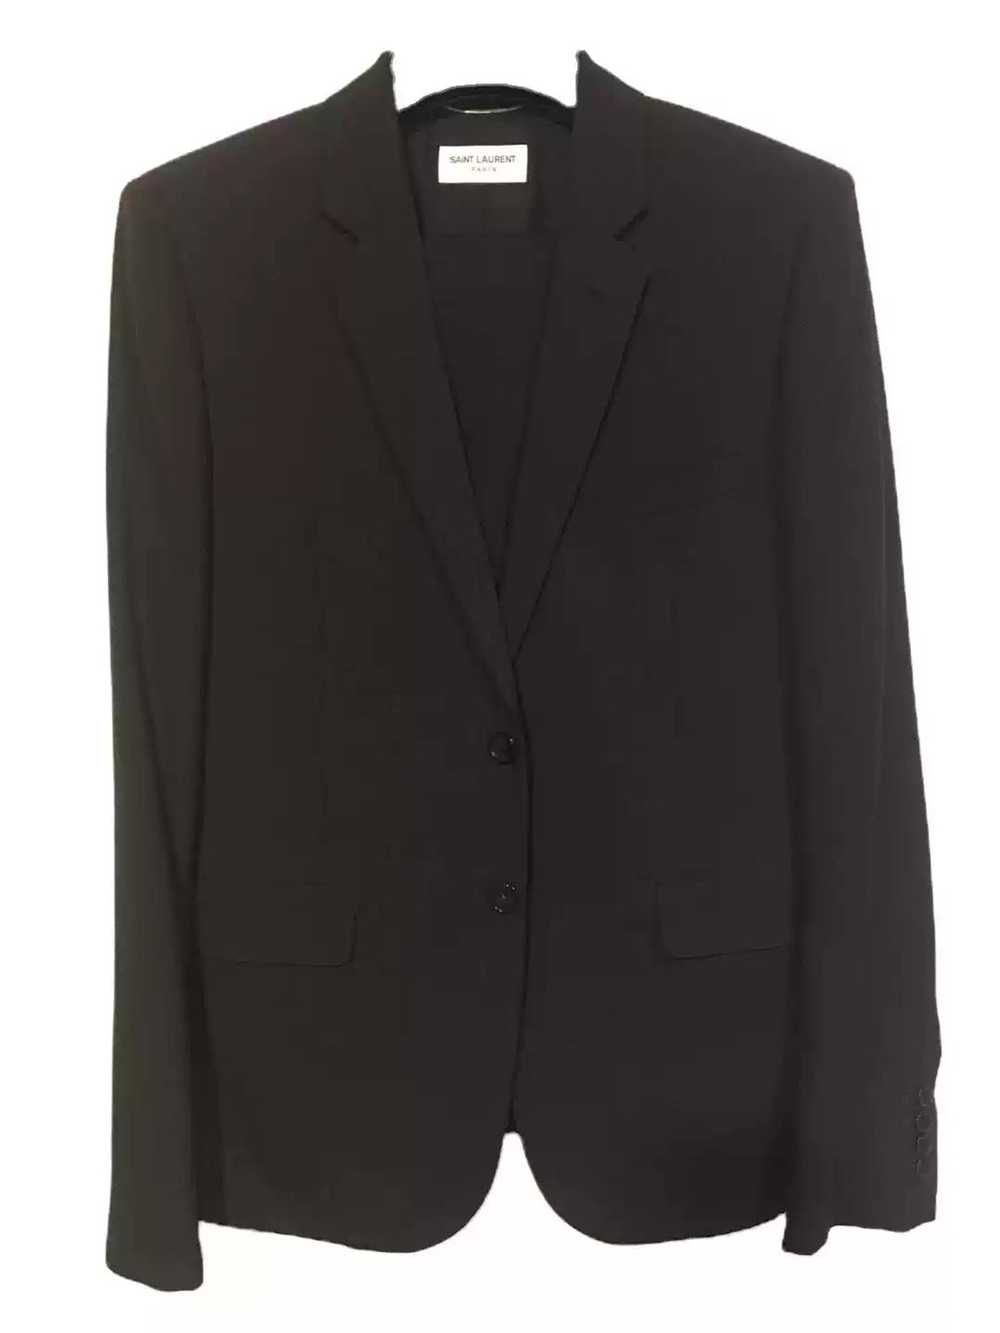 Yves Saint Laurent Black formal suit - image 3